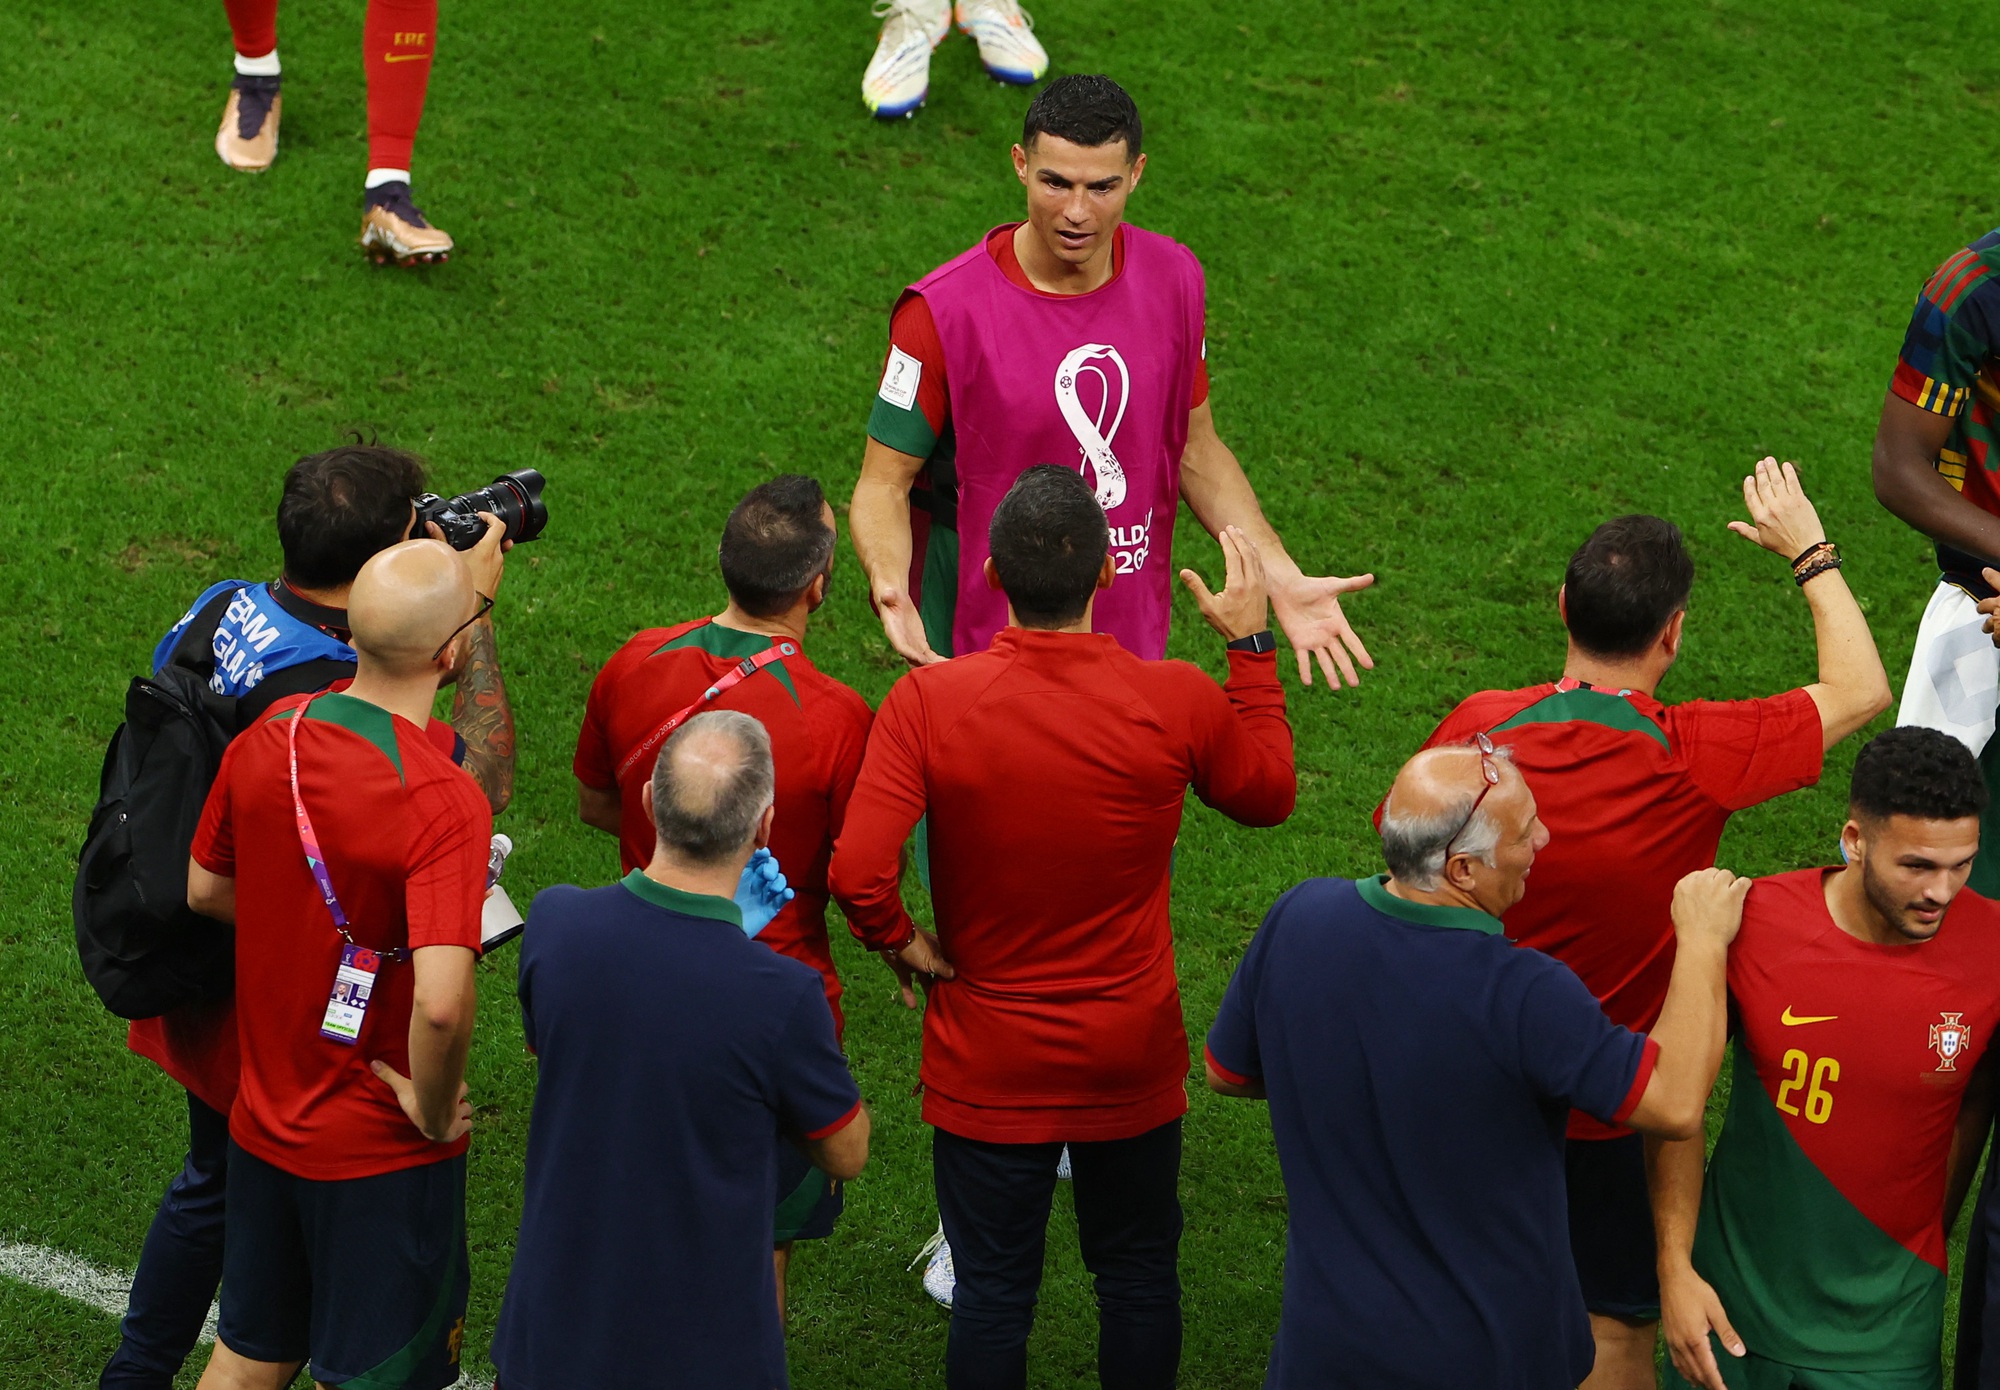 Bồ Đào Nha kêu gọi đoàn kết sau nghi án Ronaldo mắng HLV - Ảnh 3.